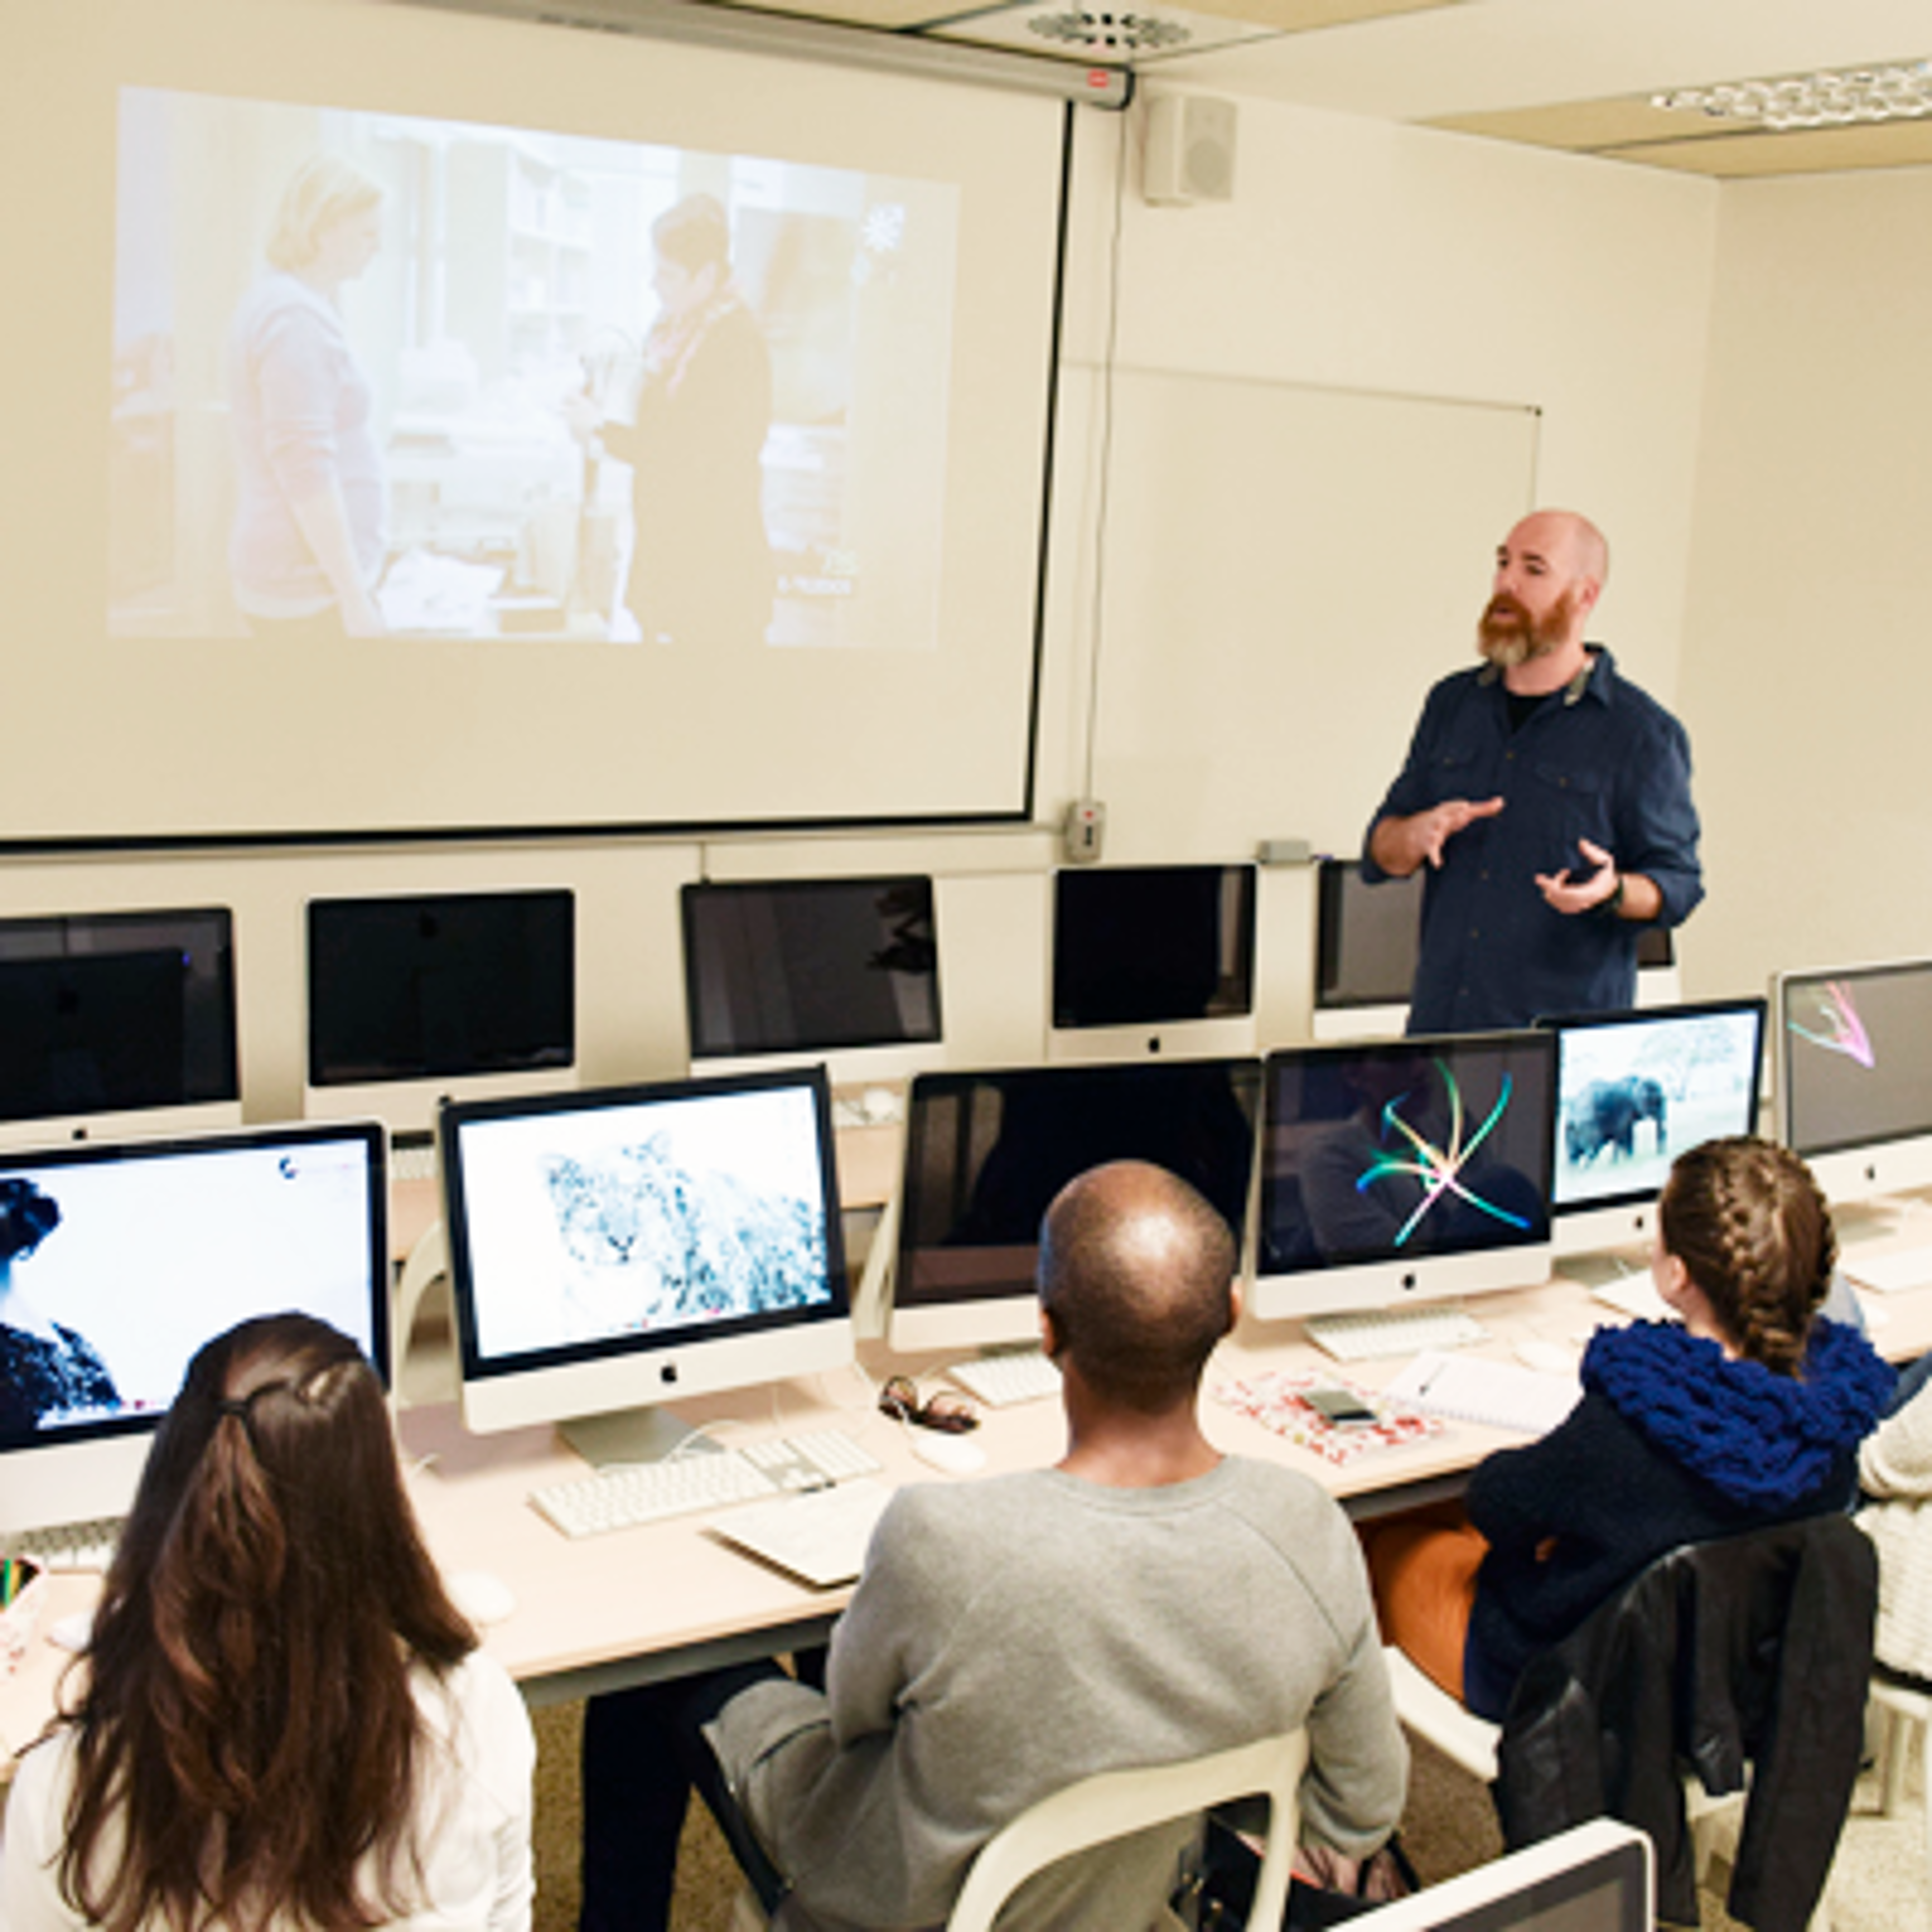 Profesor enseñando diseño gráfico a estudiantes trabajando en iMacs, con una pantalla de presentación al fondo.